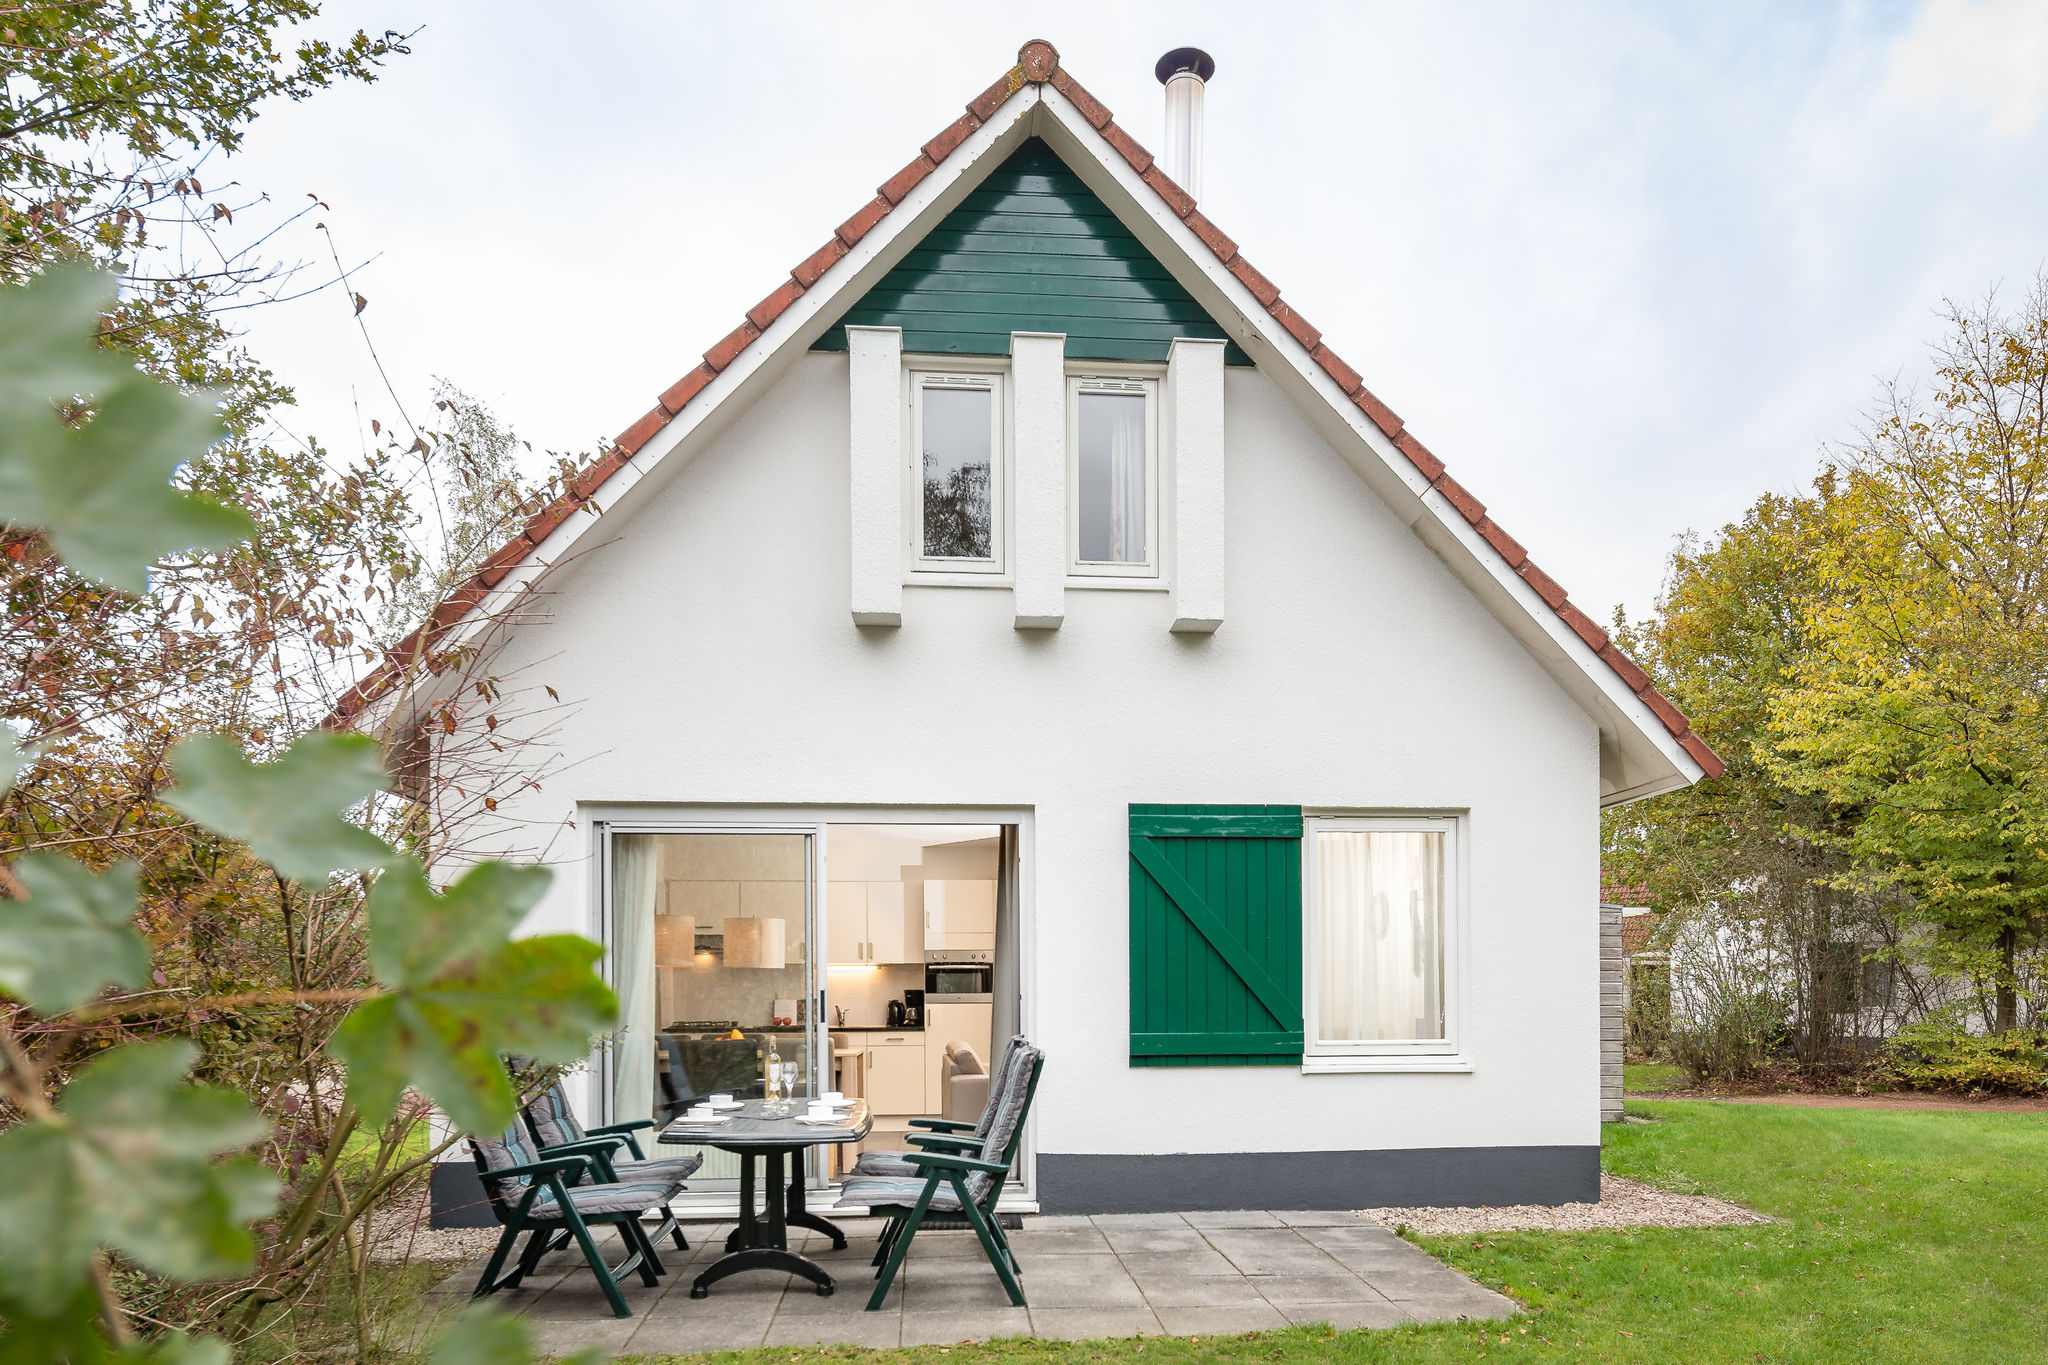 Maison de vacances, cheminée, proche Drents-Friese Wold